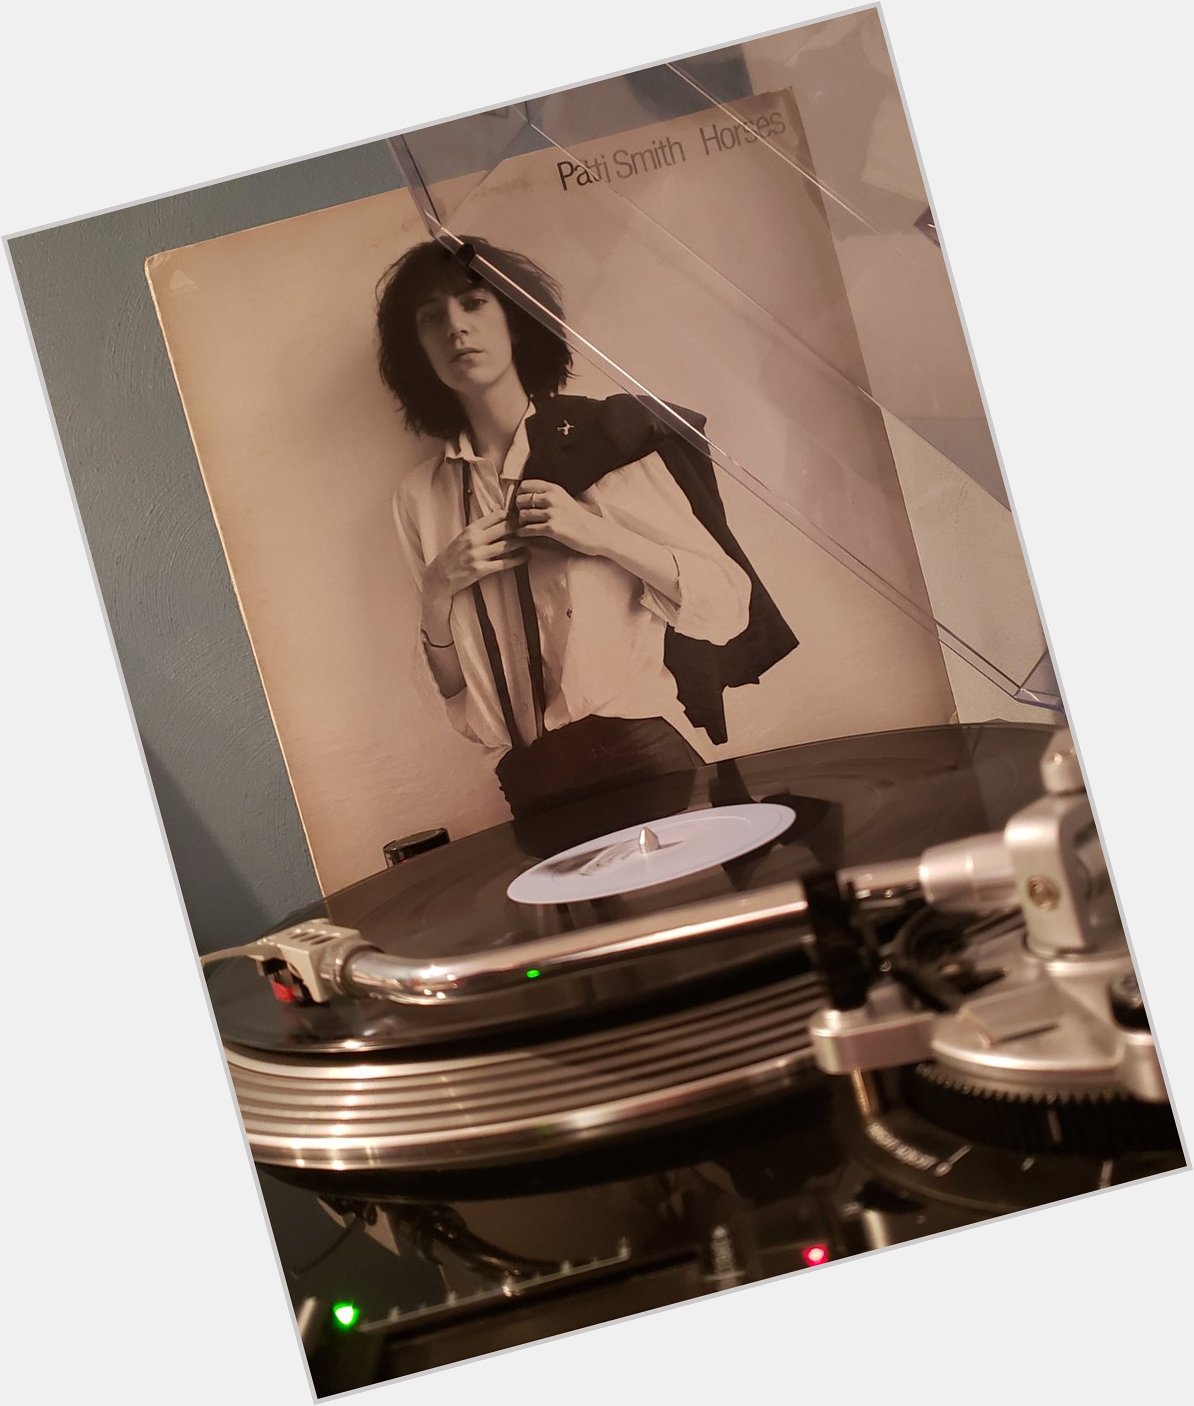 Patti Smith - Horses (1975).
Happy birthday to John Cale, producer.     